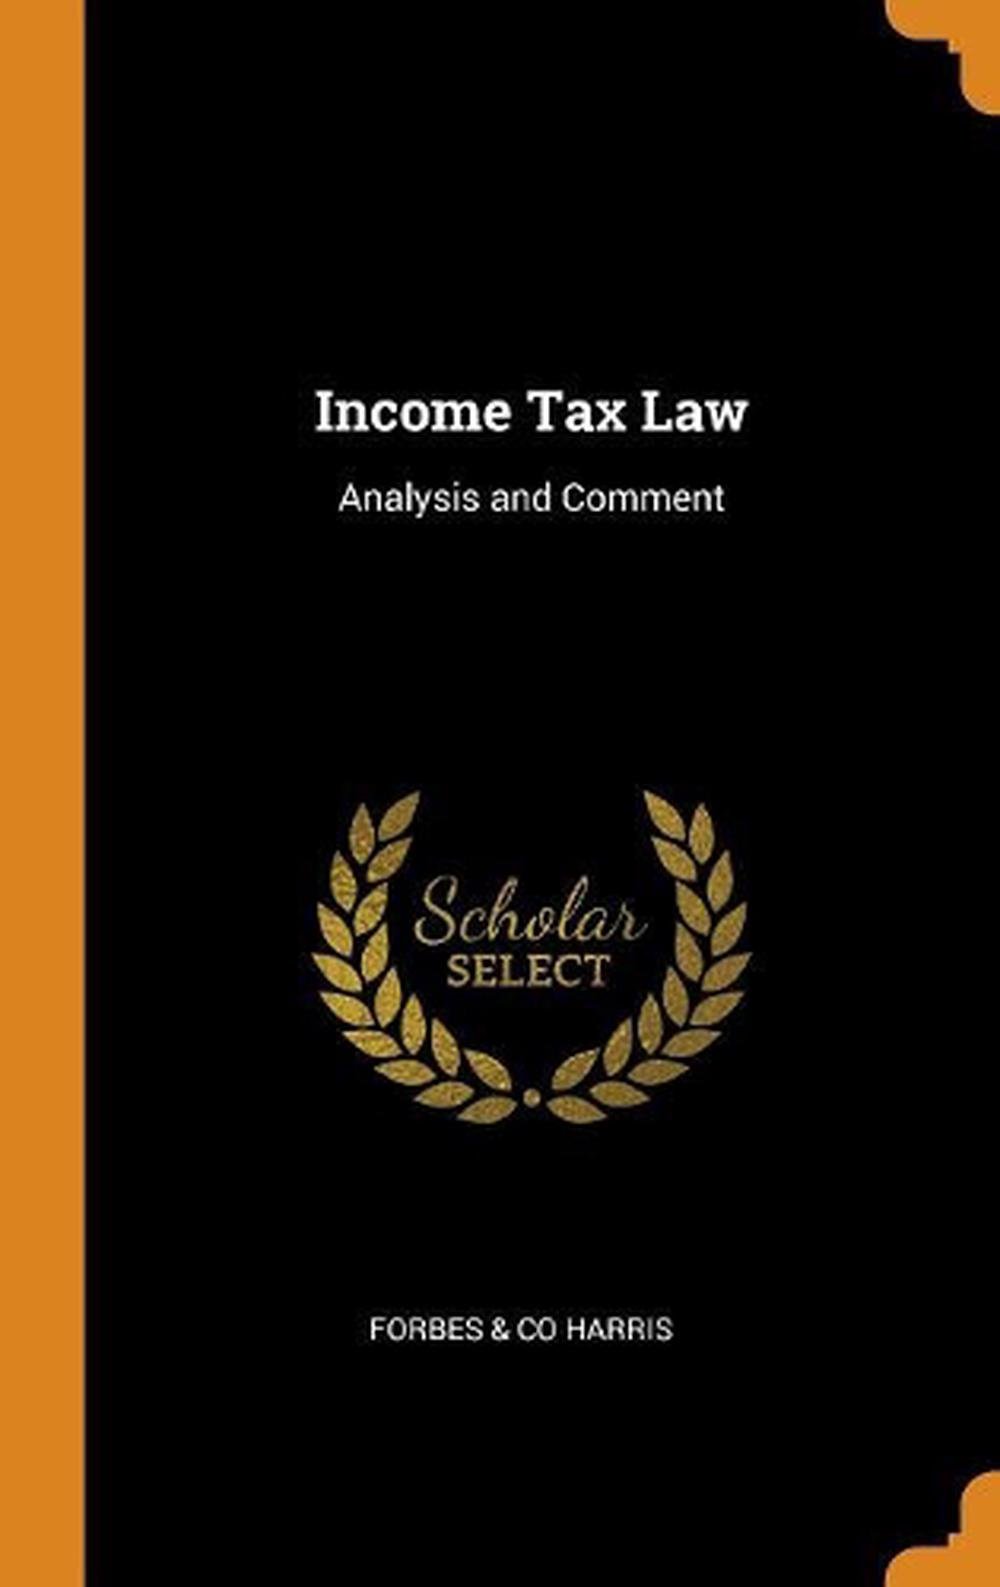 The Income Tax Law Australia